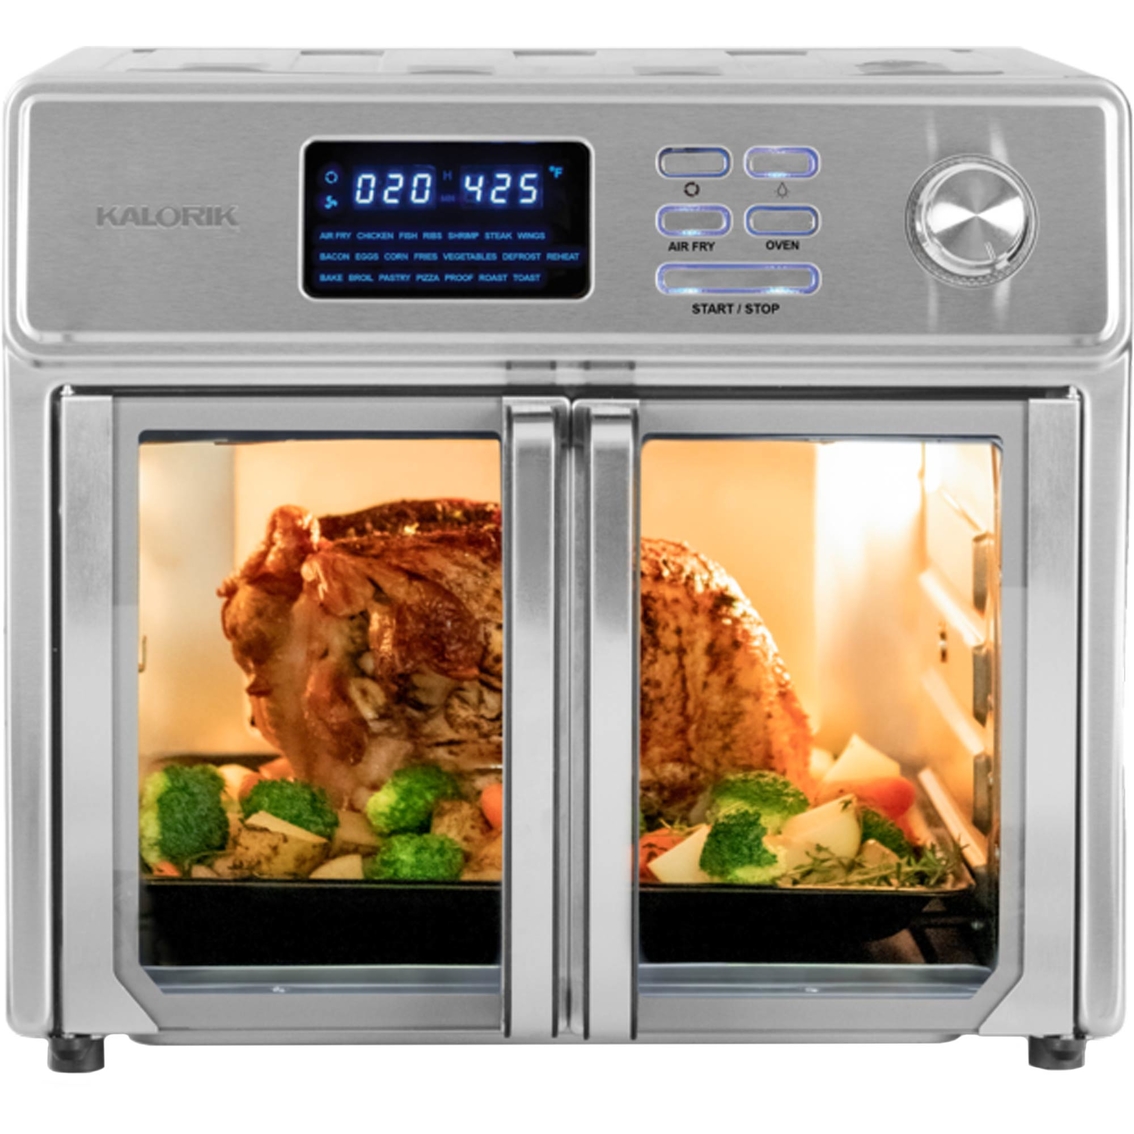 Kalorik 26 qt. Digital Maxx Air Fryer Oven - Image 1 of 7